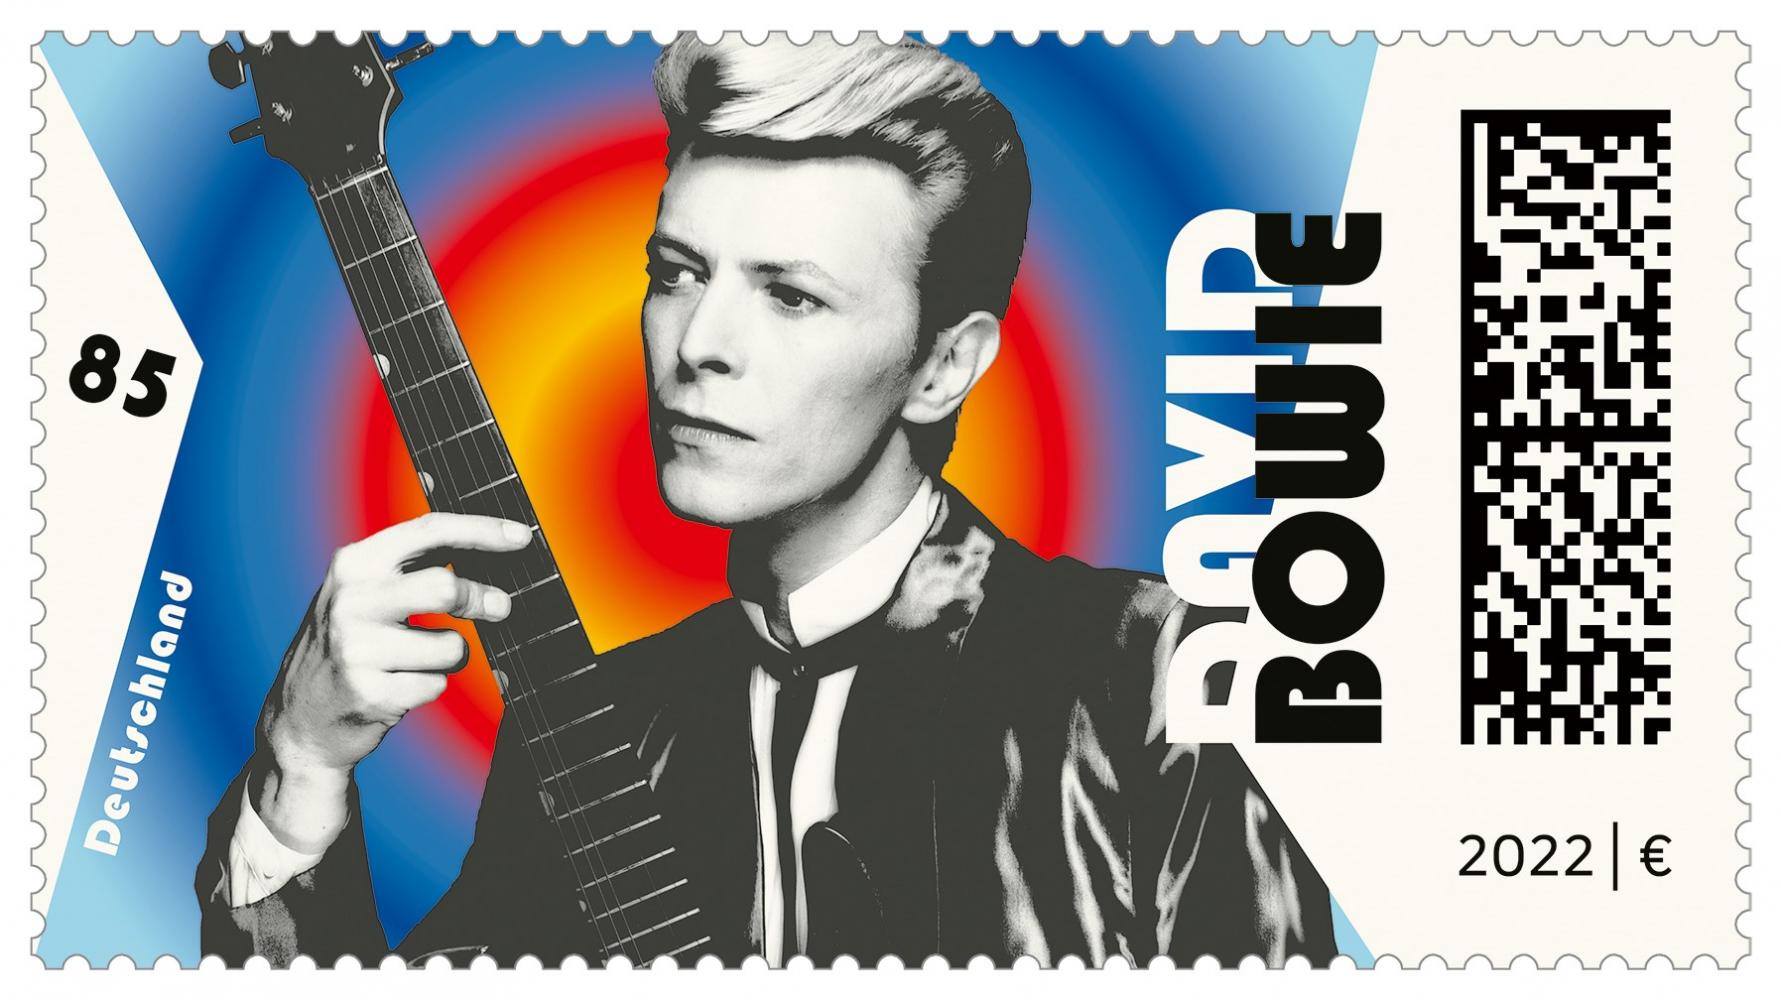 Briefmarke zum 75. Geburtstag von David Bowie